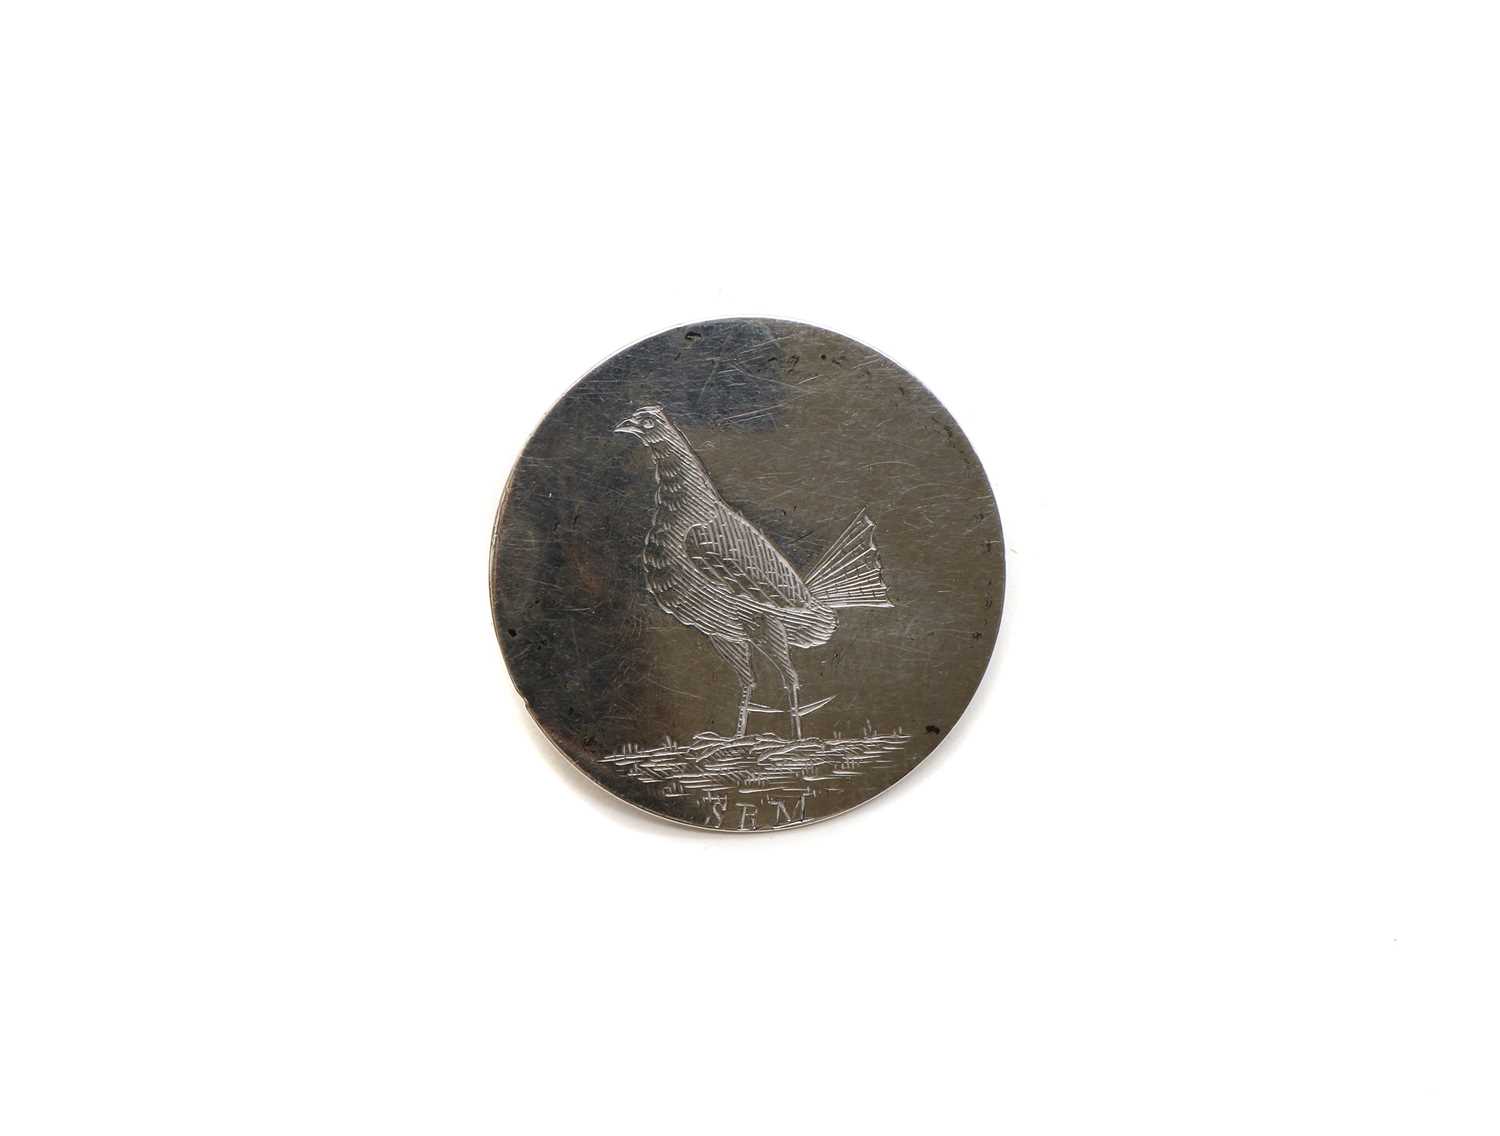 A silver cockfighting button